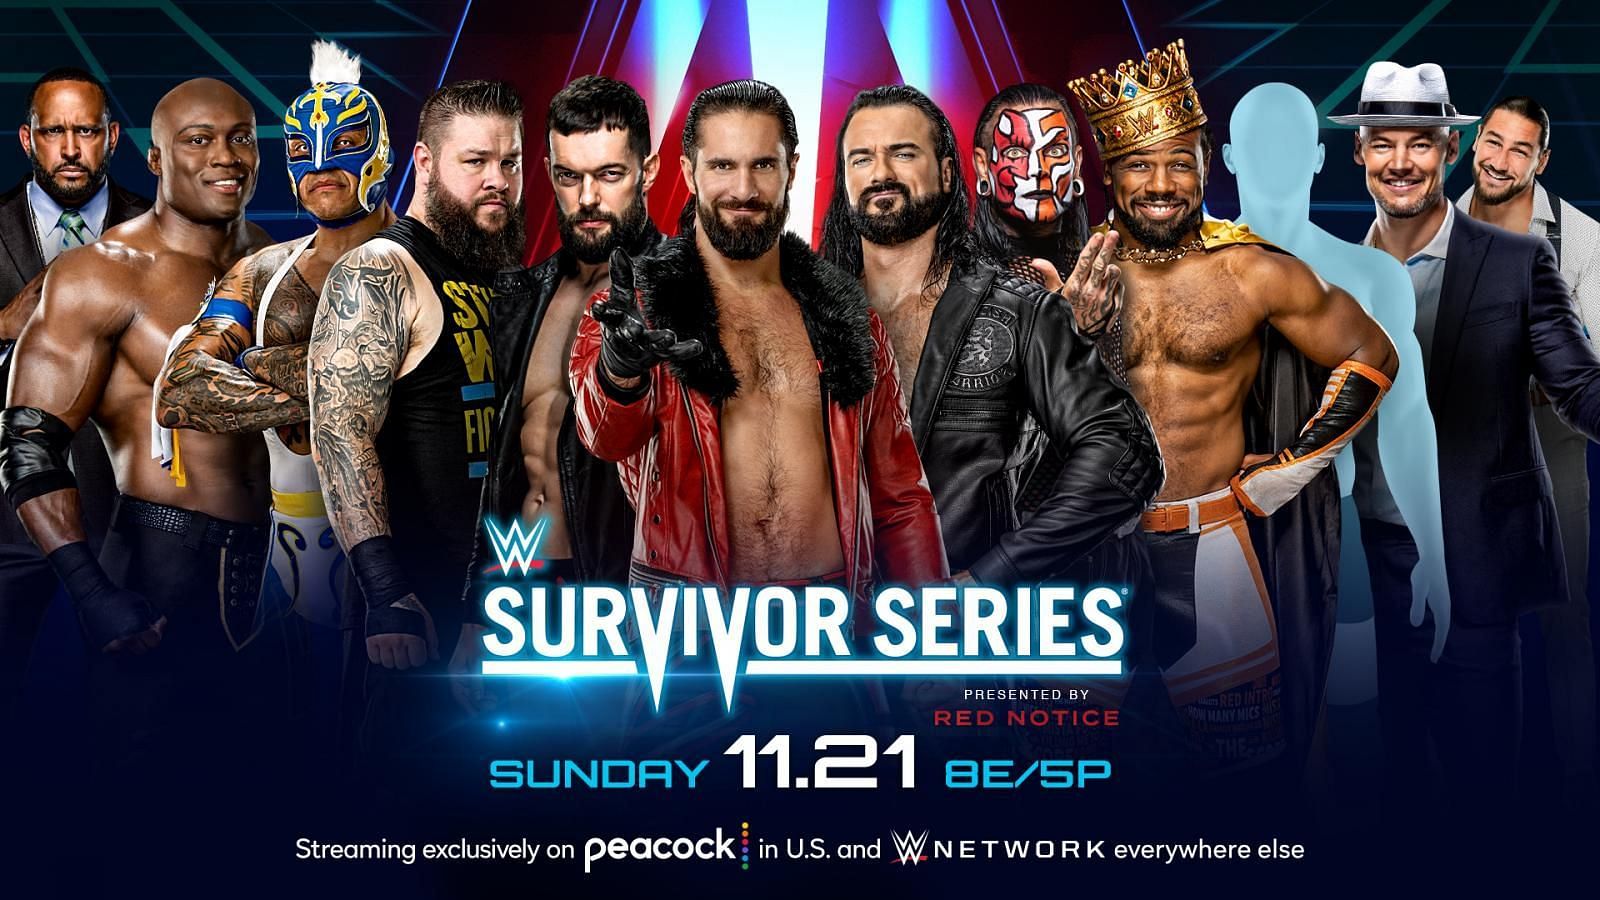 WWE Survivor Series में इस साल दो एलिमिनेशन मैच होने वाले हैं